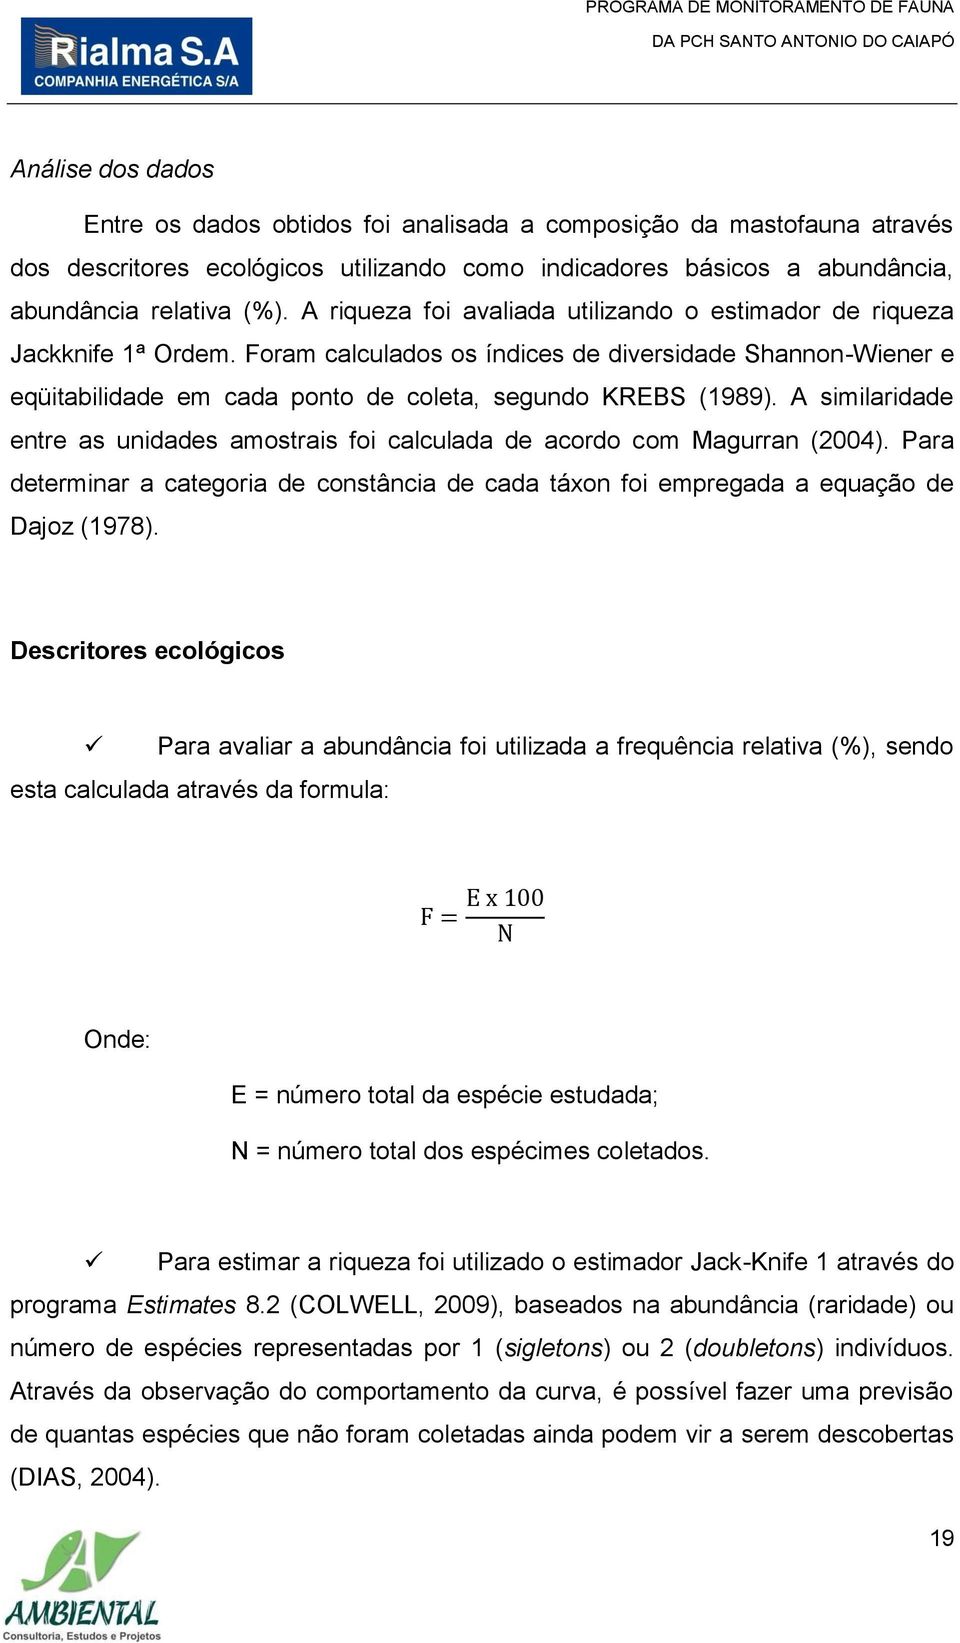 A similaridade entre as unidades amostrais foi calculada de acordo com Magurran (2004). Para determinar a categoria de constância de cada táxon foi empregada a equação de Dajoz (1978).